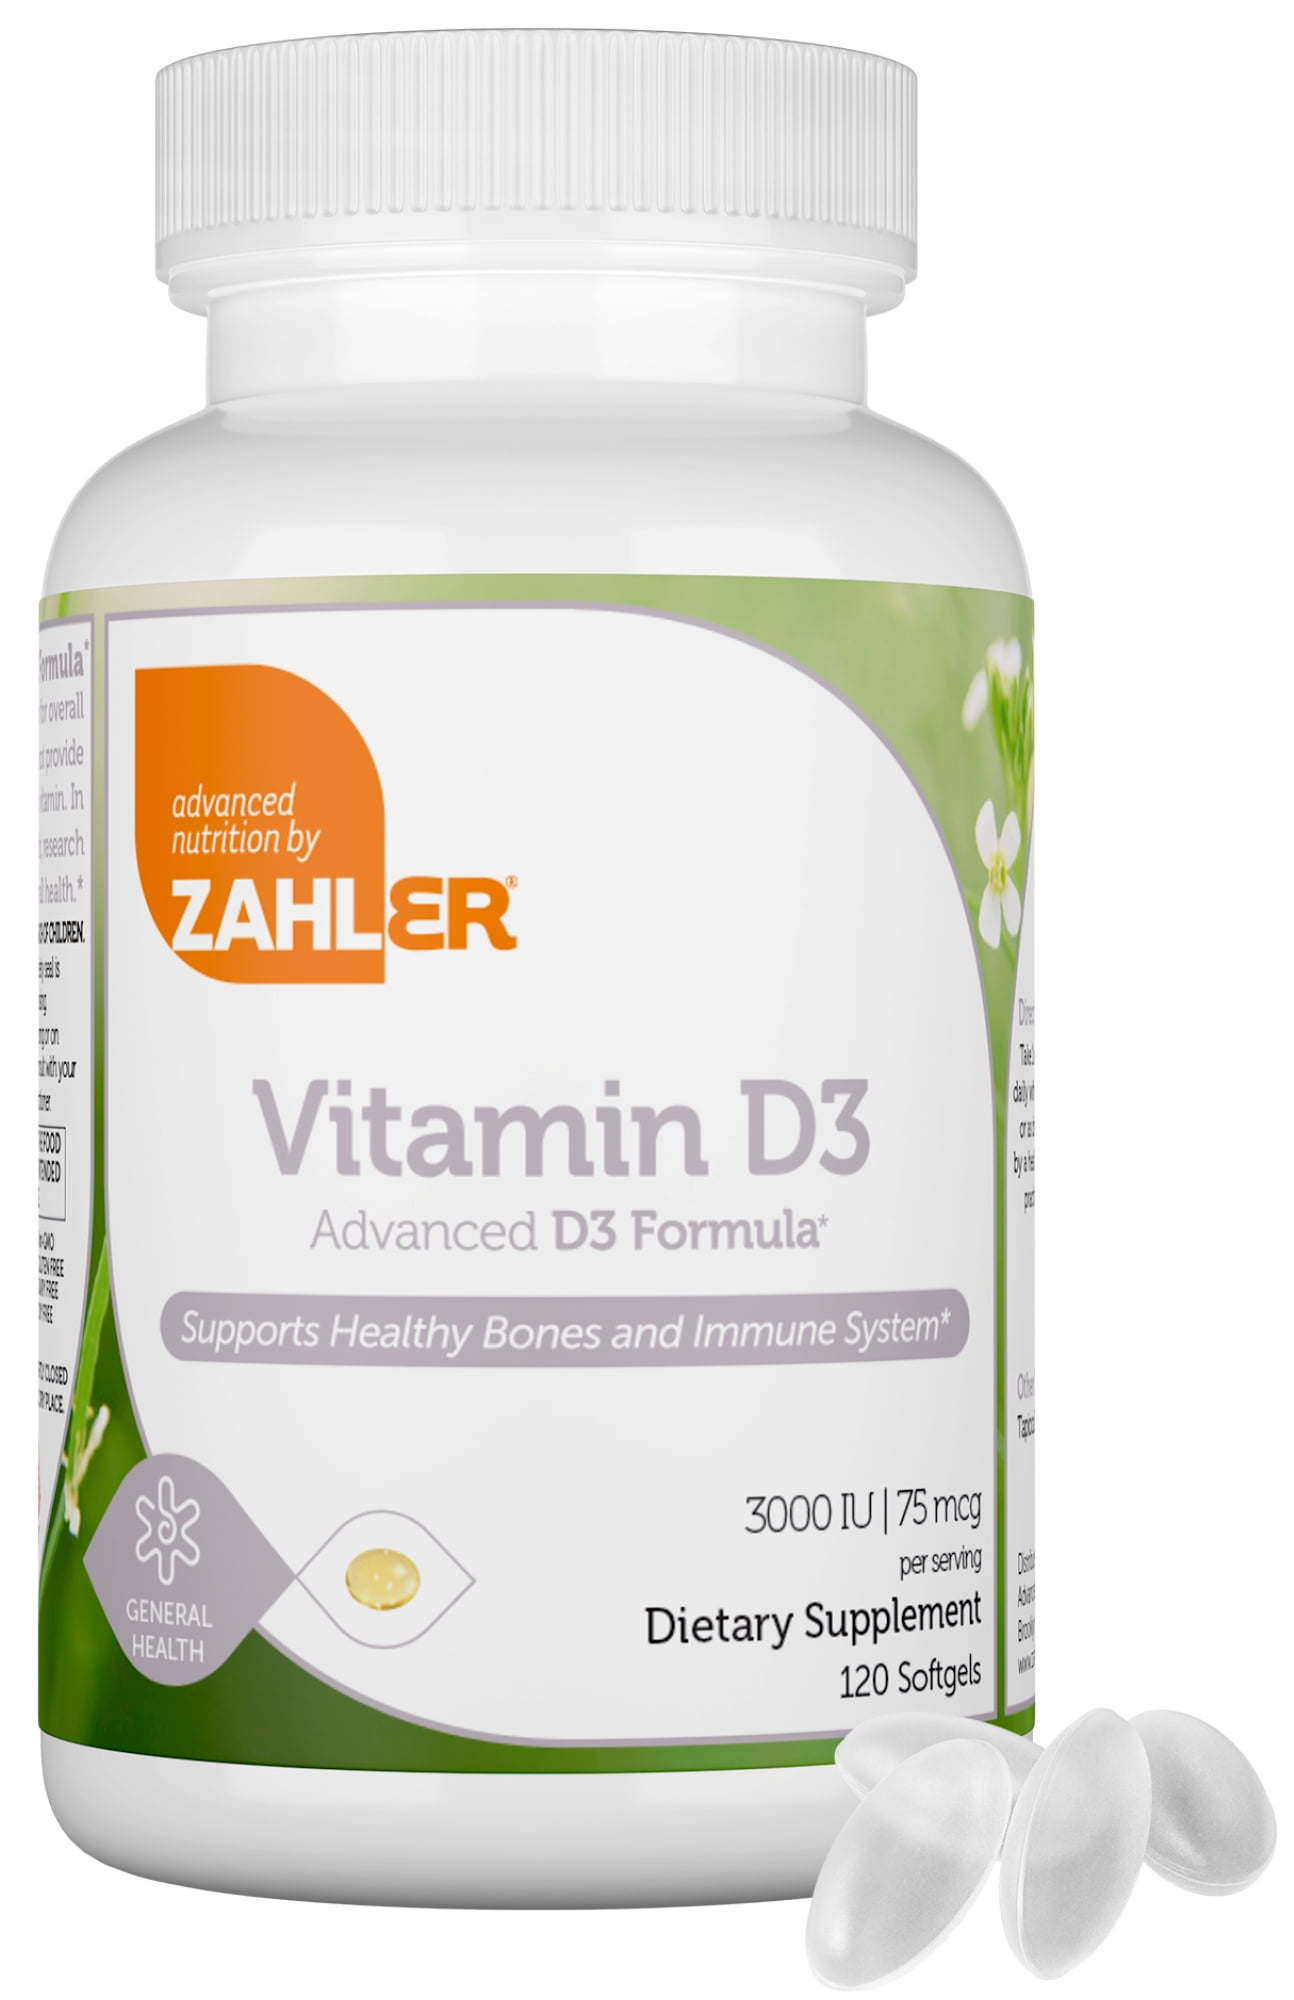 Zahler Vitamin D3IU, Advanced D3 Formula, Supports Healthy Bones and ...